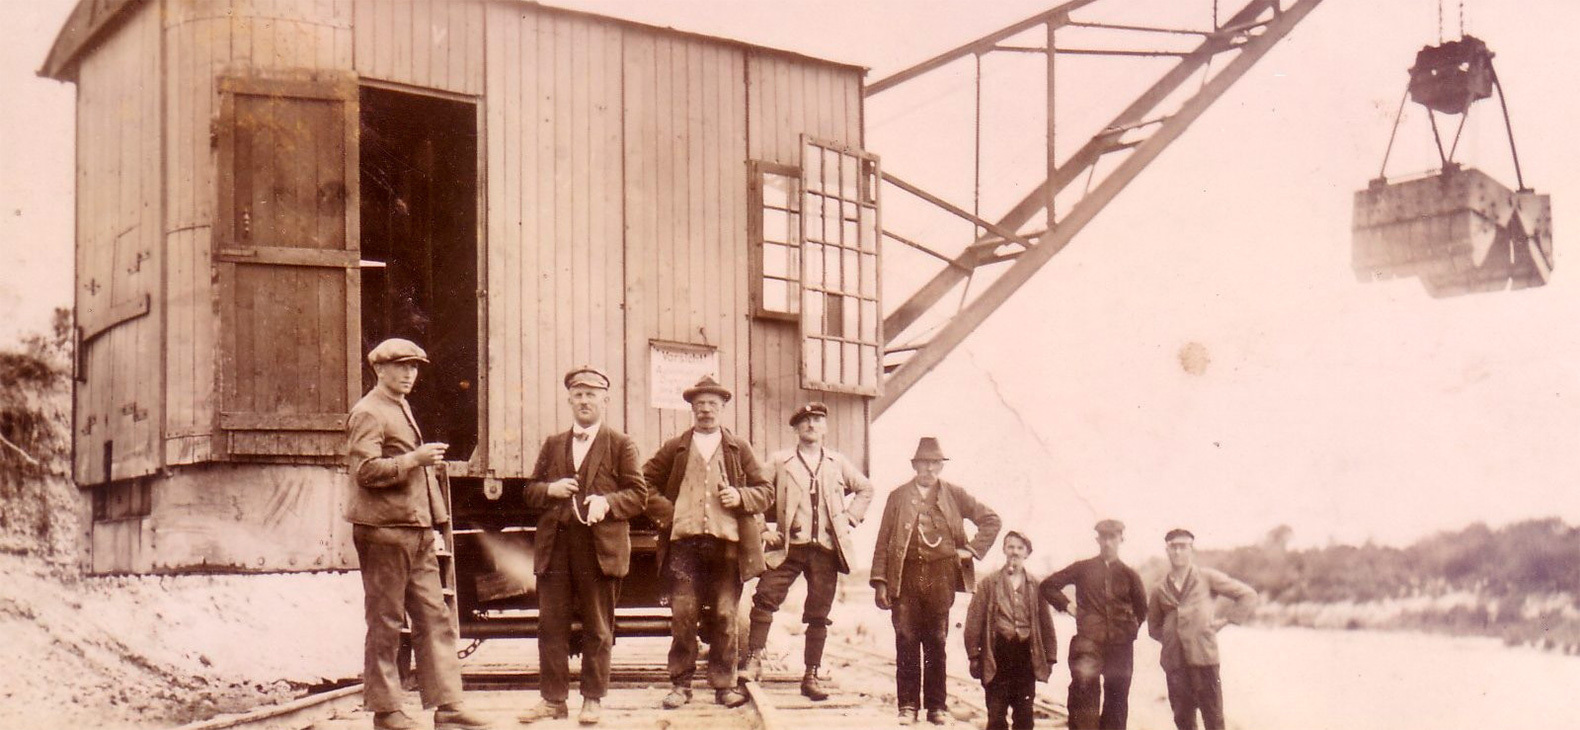 Antike Fotografie: Männer vor Bauwagen